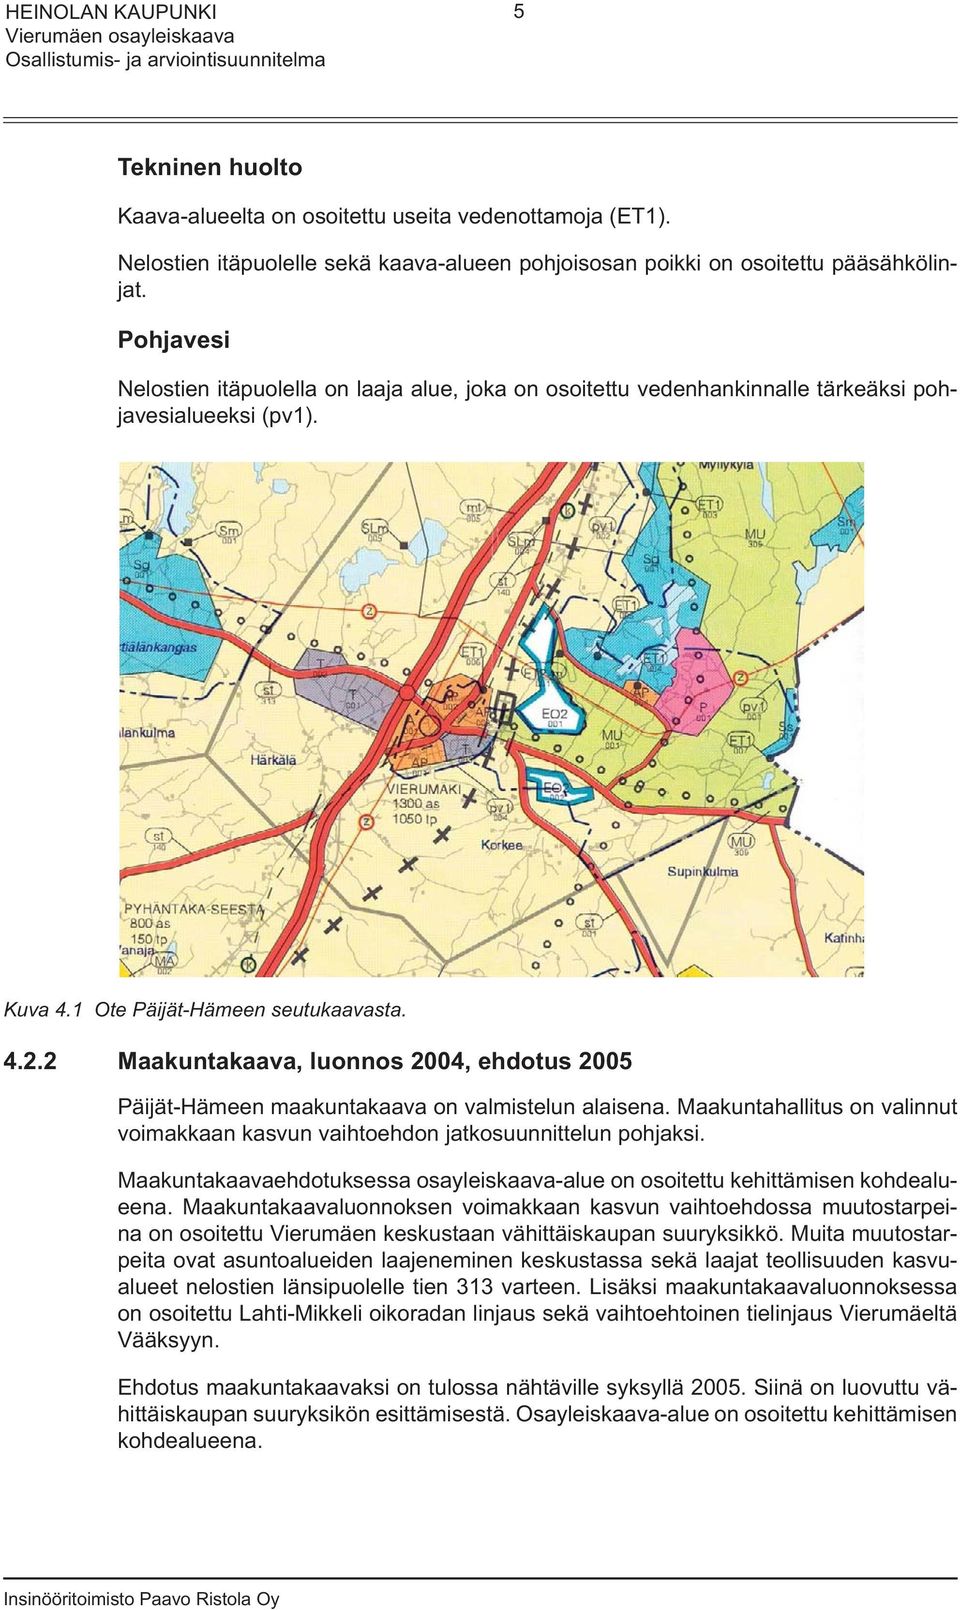 2 Maakuntakaava, luonnos 2004, ehdotus 2005 Päijät-Hämeen maakuntakaava on valmistelun alaisena. Maakuntahallitus on valinnut voimakkaan kasvun vaihtoehdon jatkosuunnittelun pohjaksi.